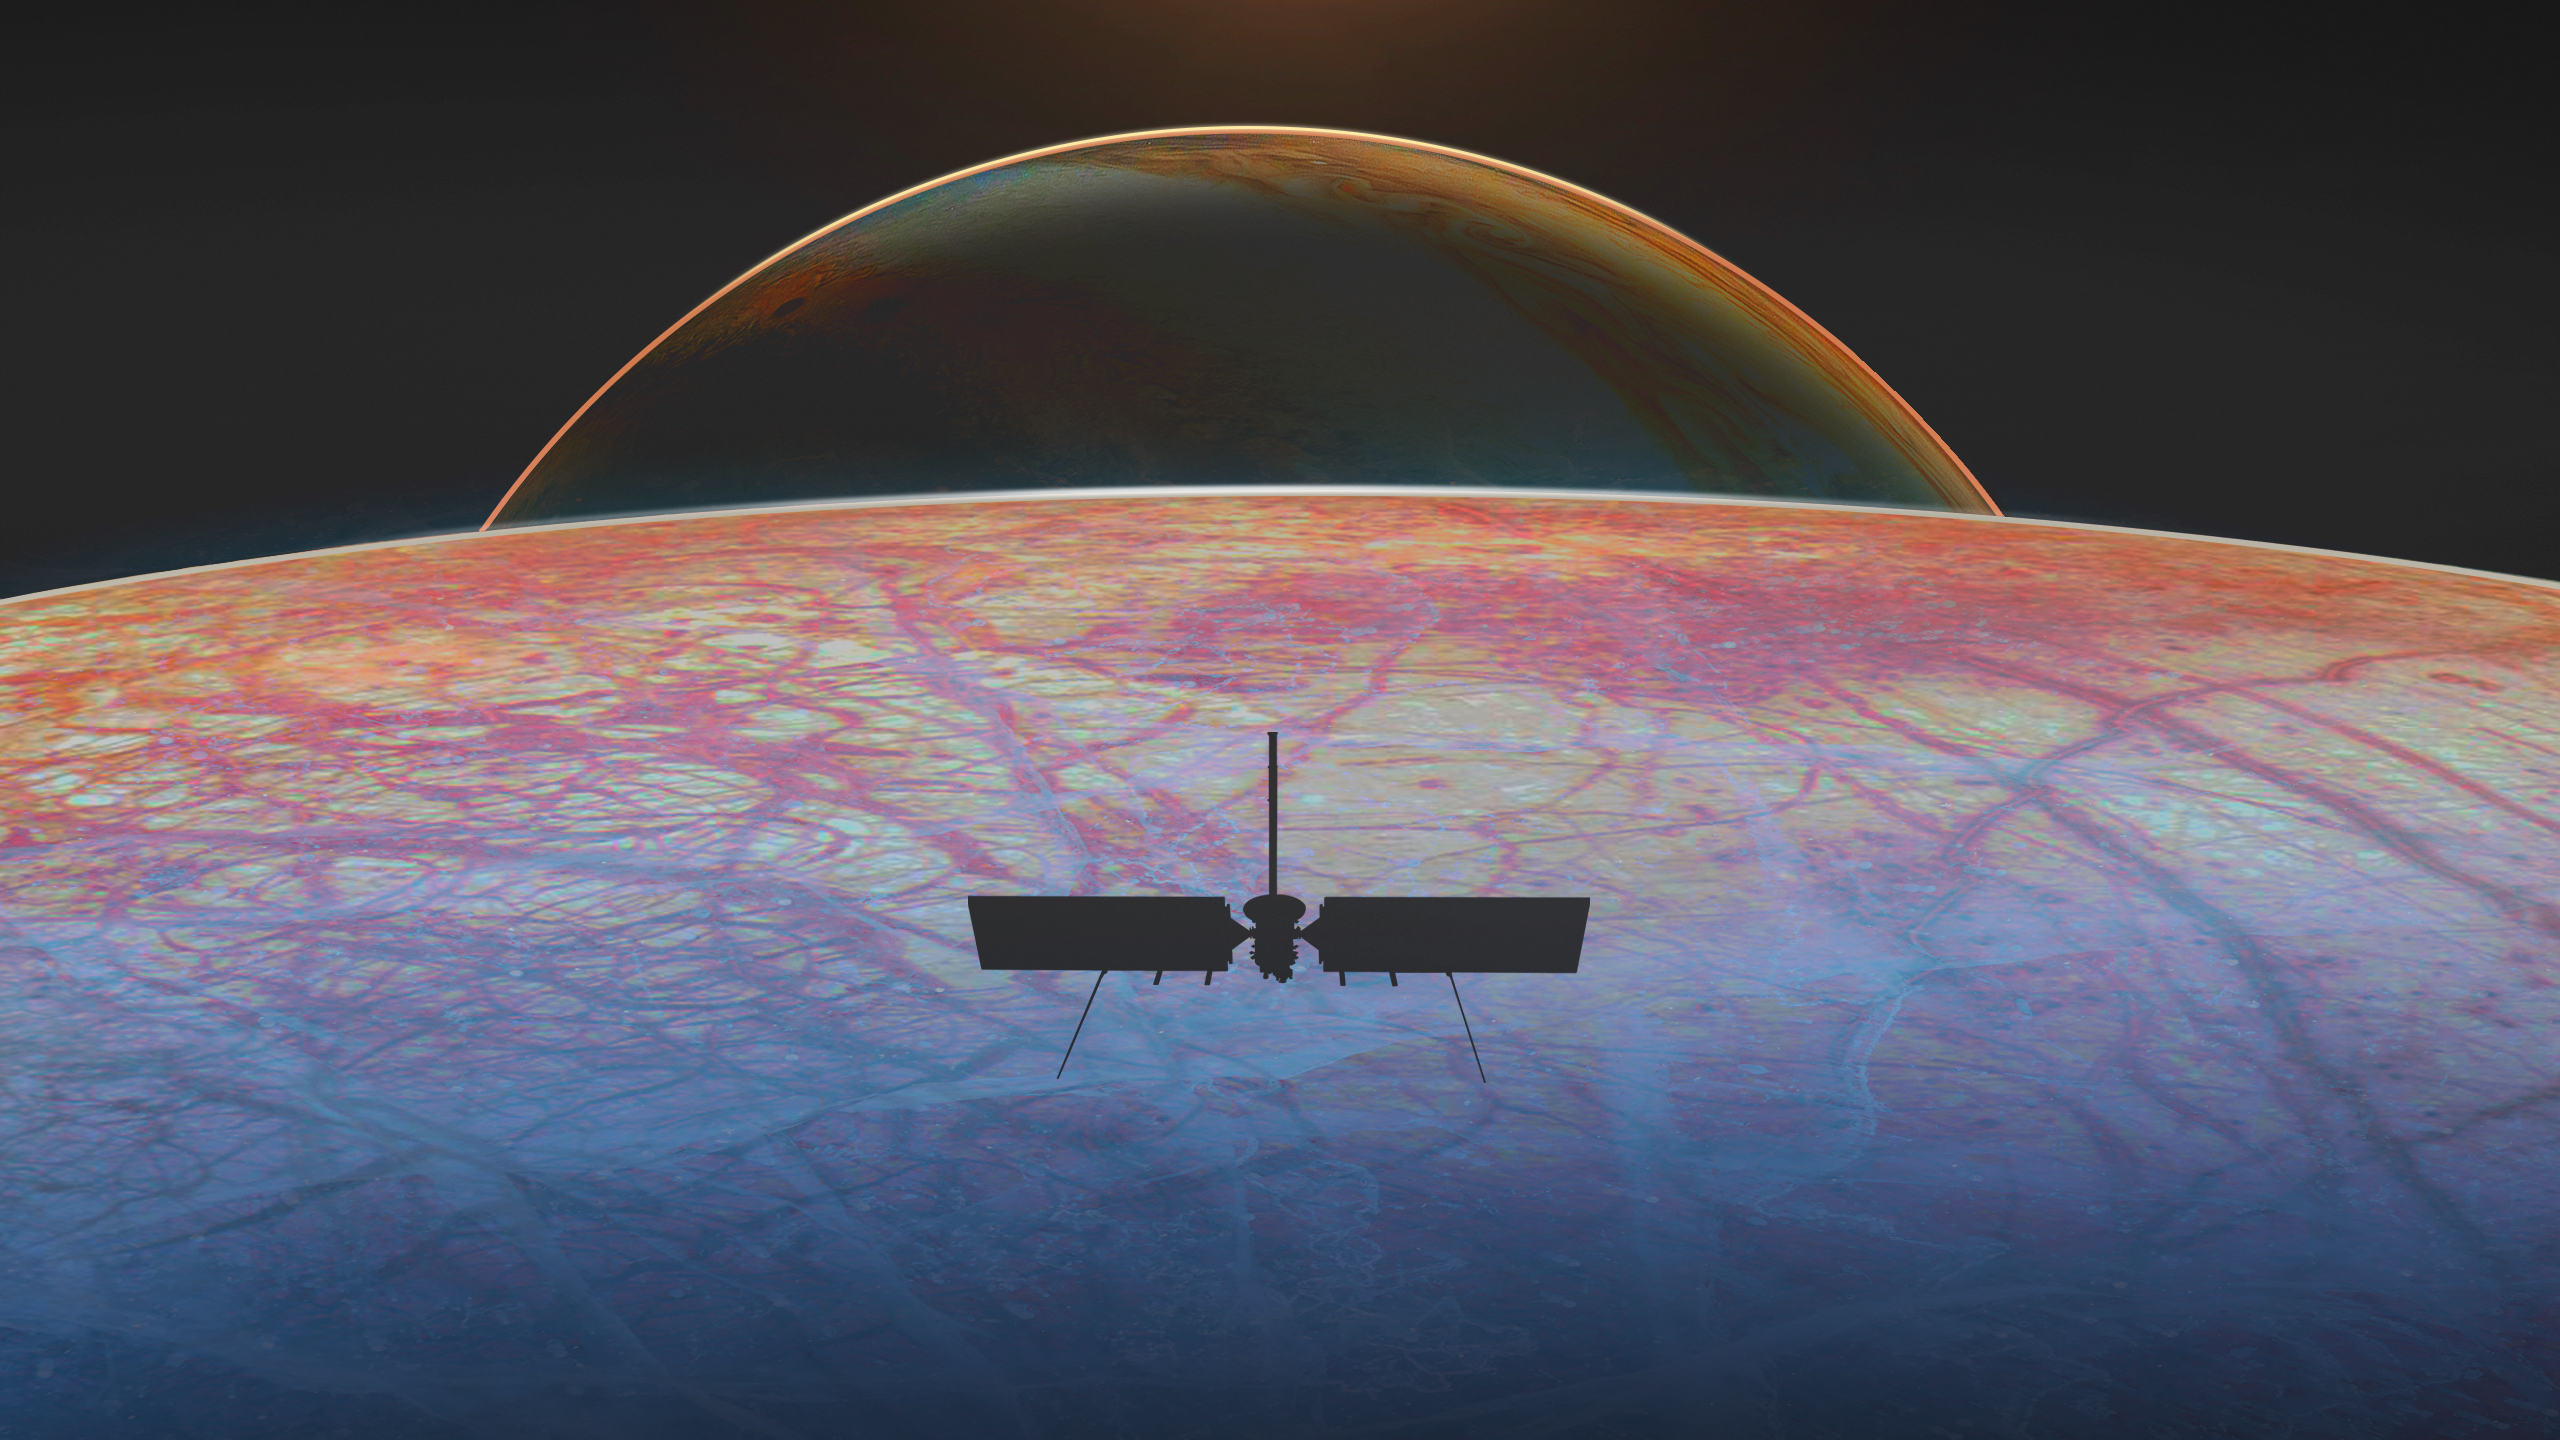 图中显示了一艘飞船在结冰的月球表面上的轮廓，月球表面有红色的裂缝。在月球地平线之外，木星就坐落在远处。